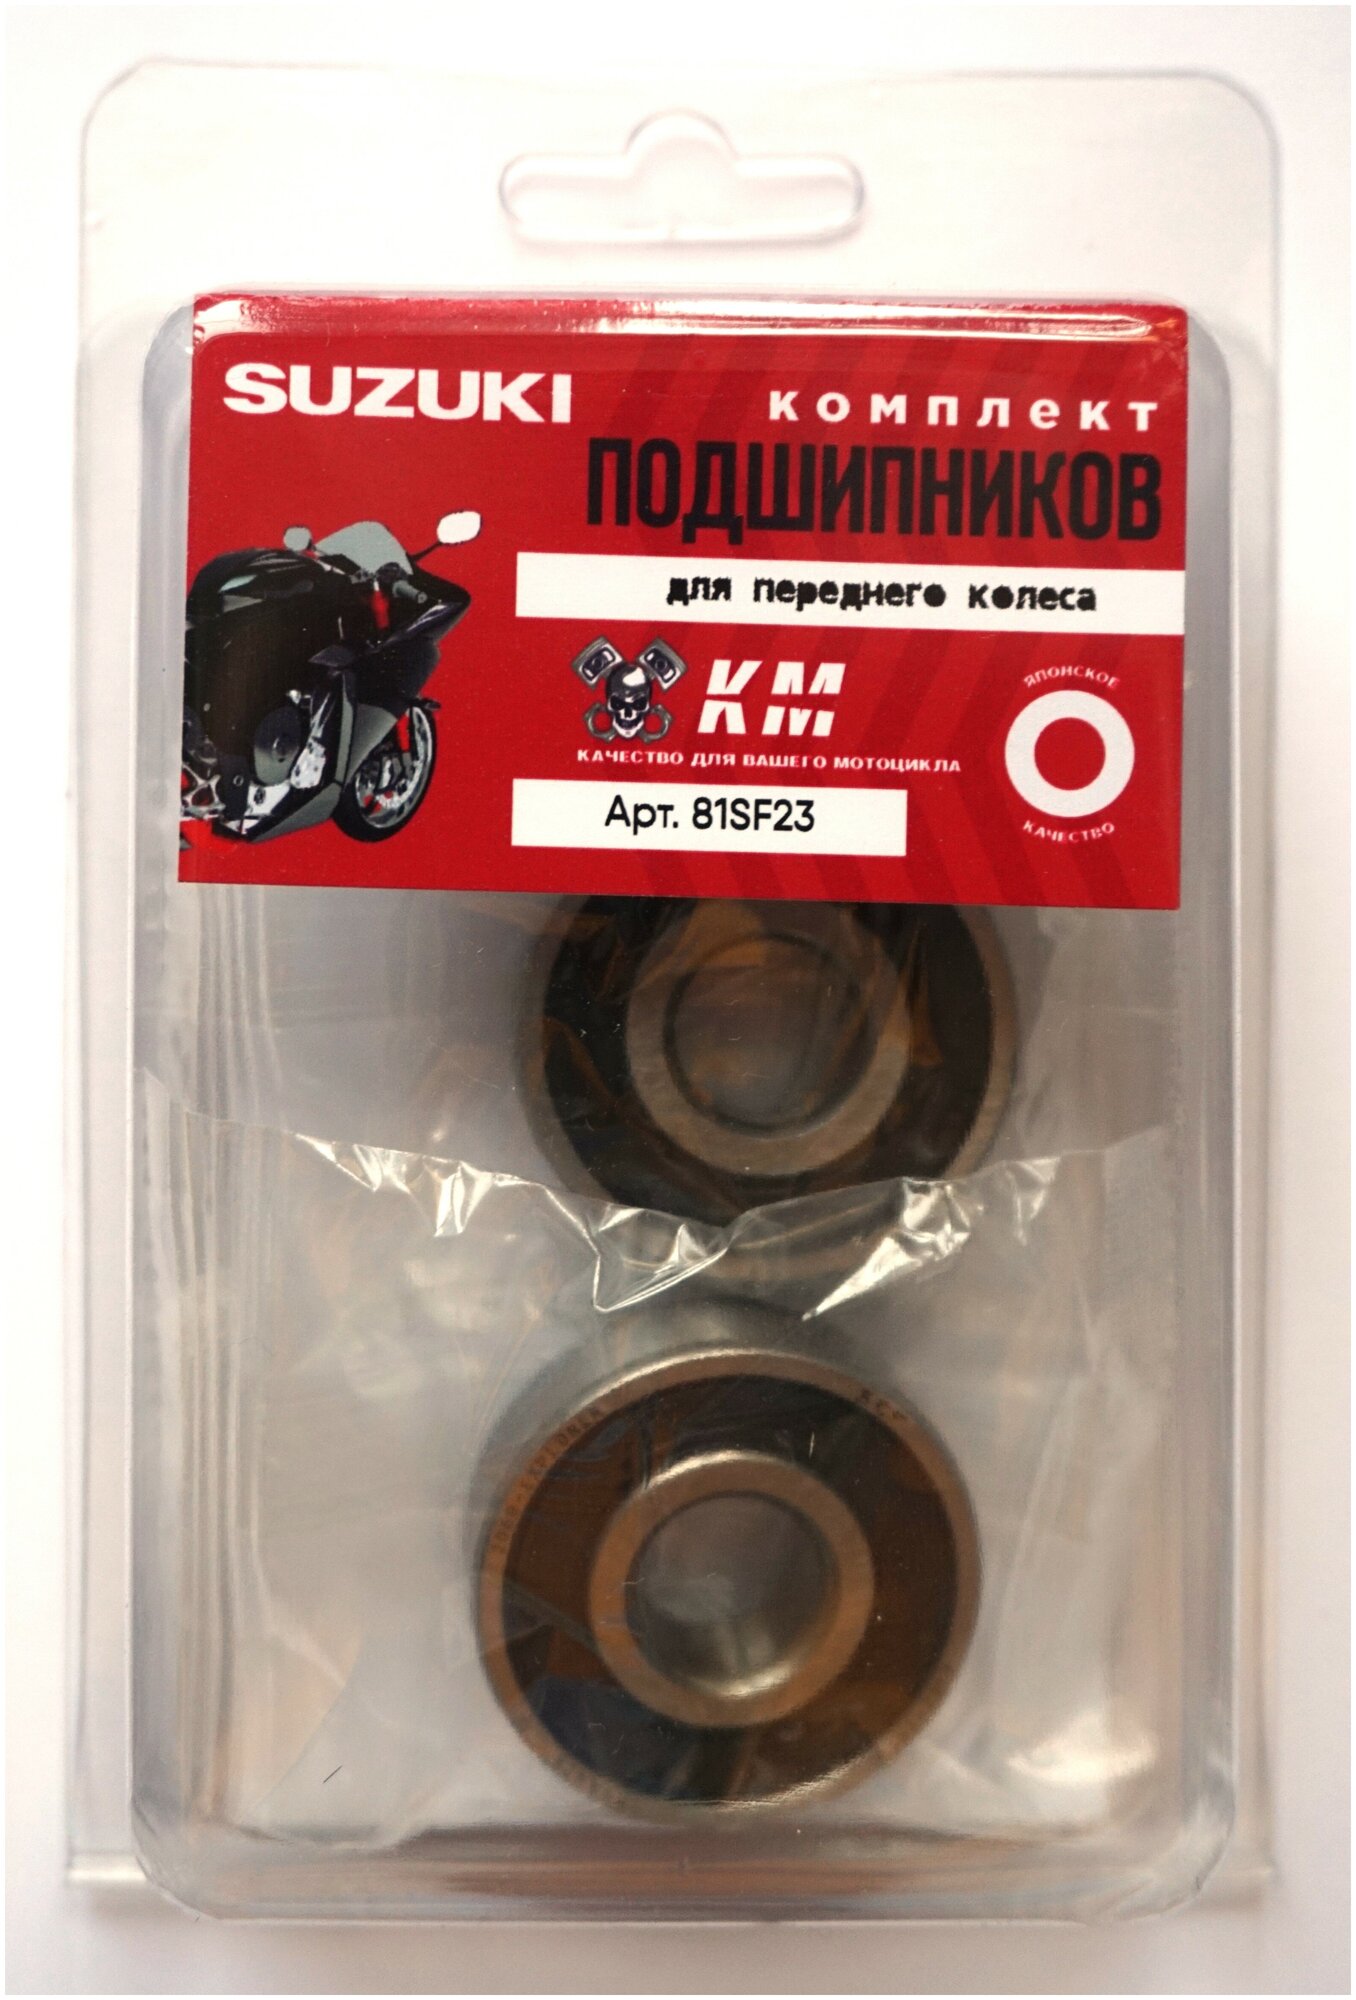 Комплект подшипников переднего колеса Suzuki КМ 81SF23